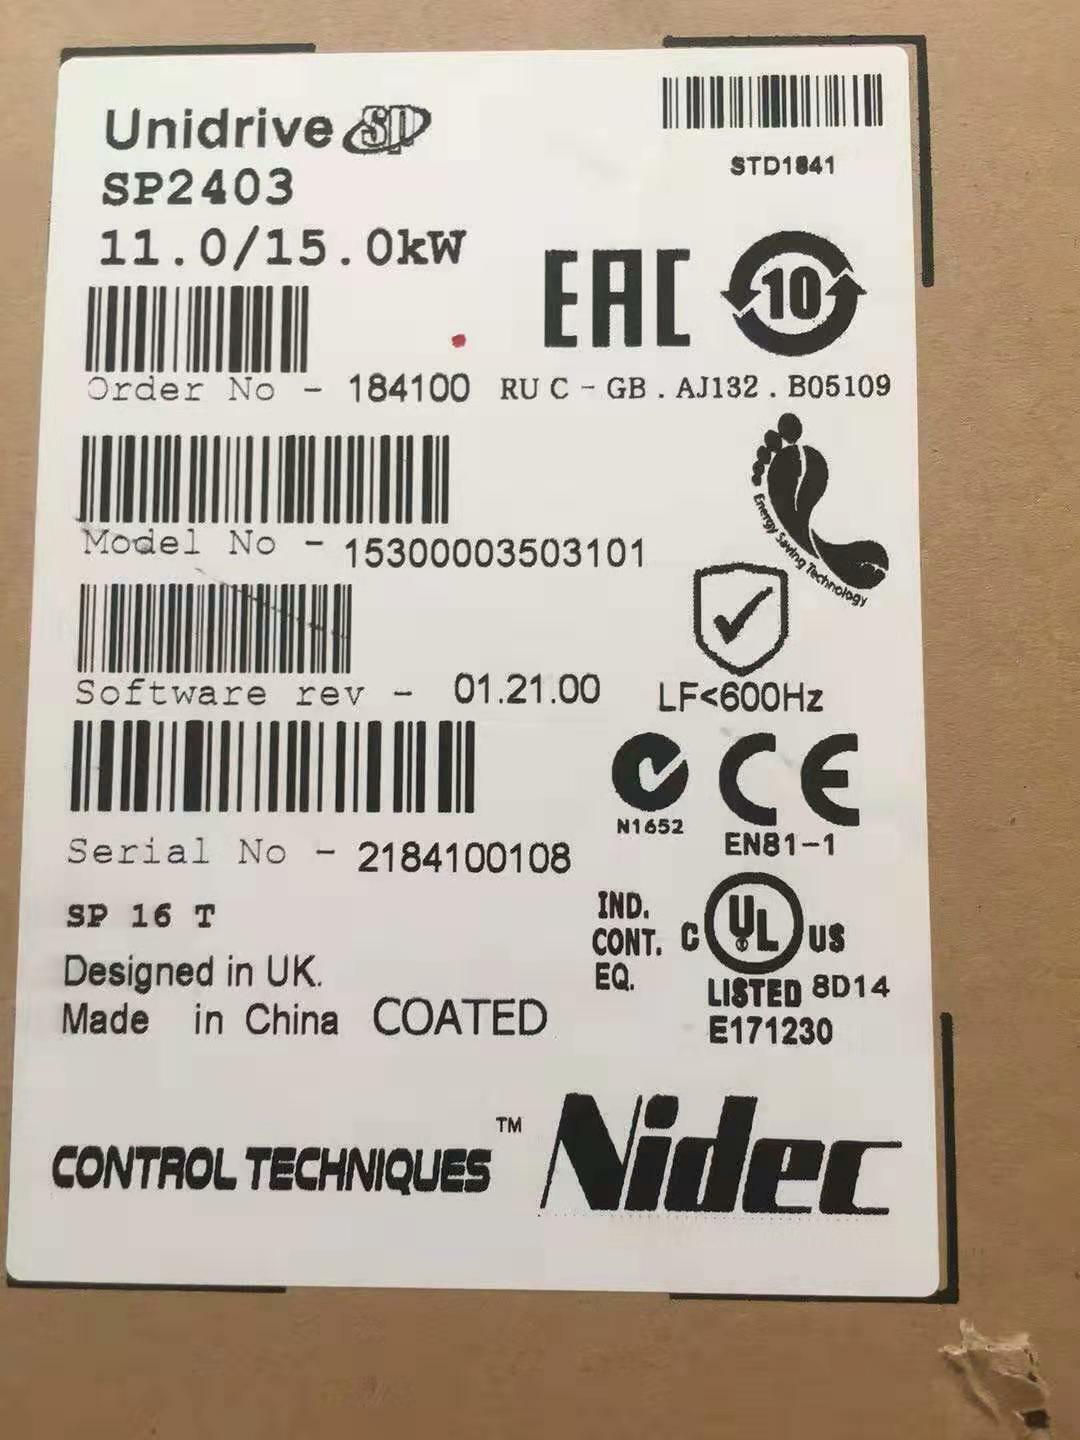 New Nidec = Emerson SP2403 Control Techniques Unidrive SP 11kW Inverter Drive